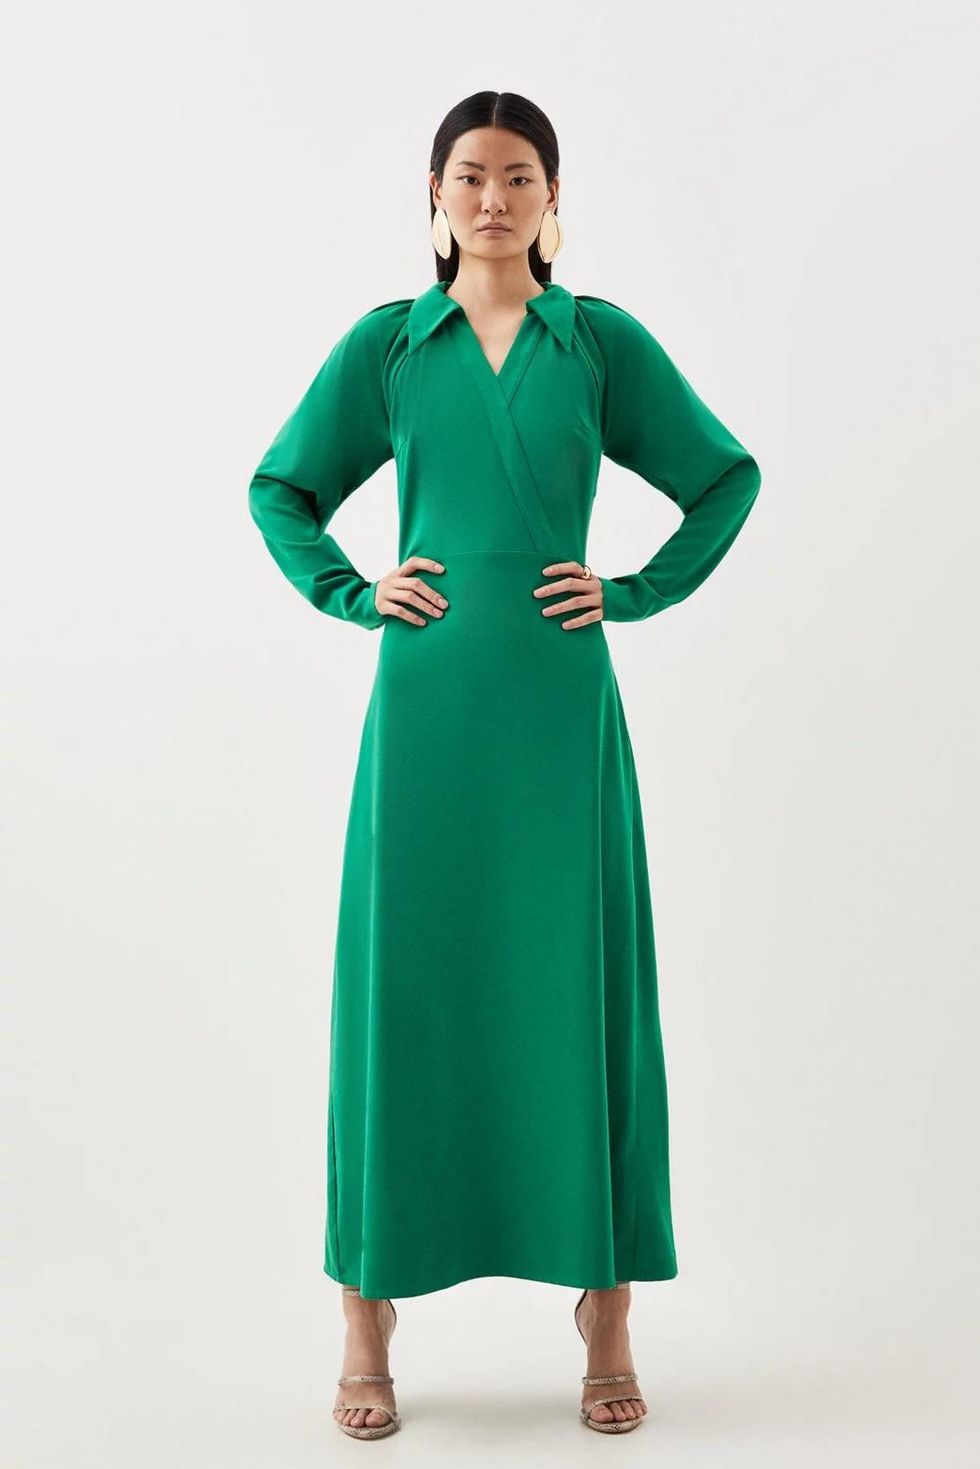 Lorraine Kelly is radiant in long sleeve emerald dress